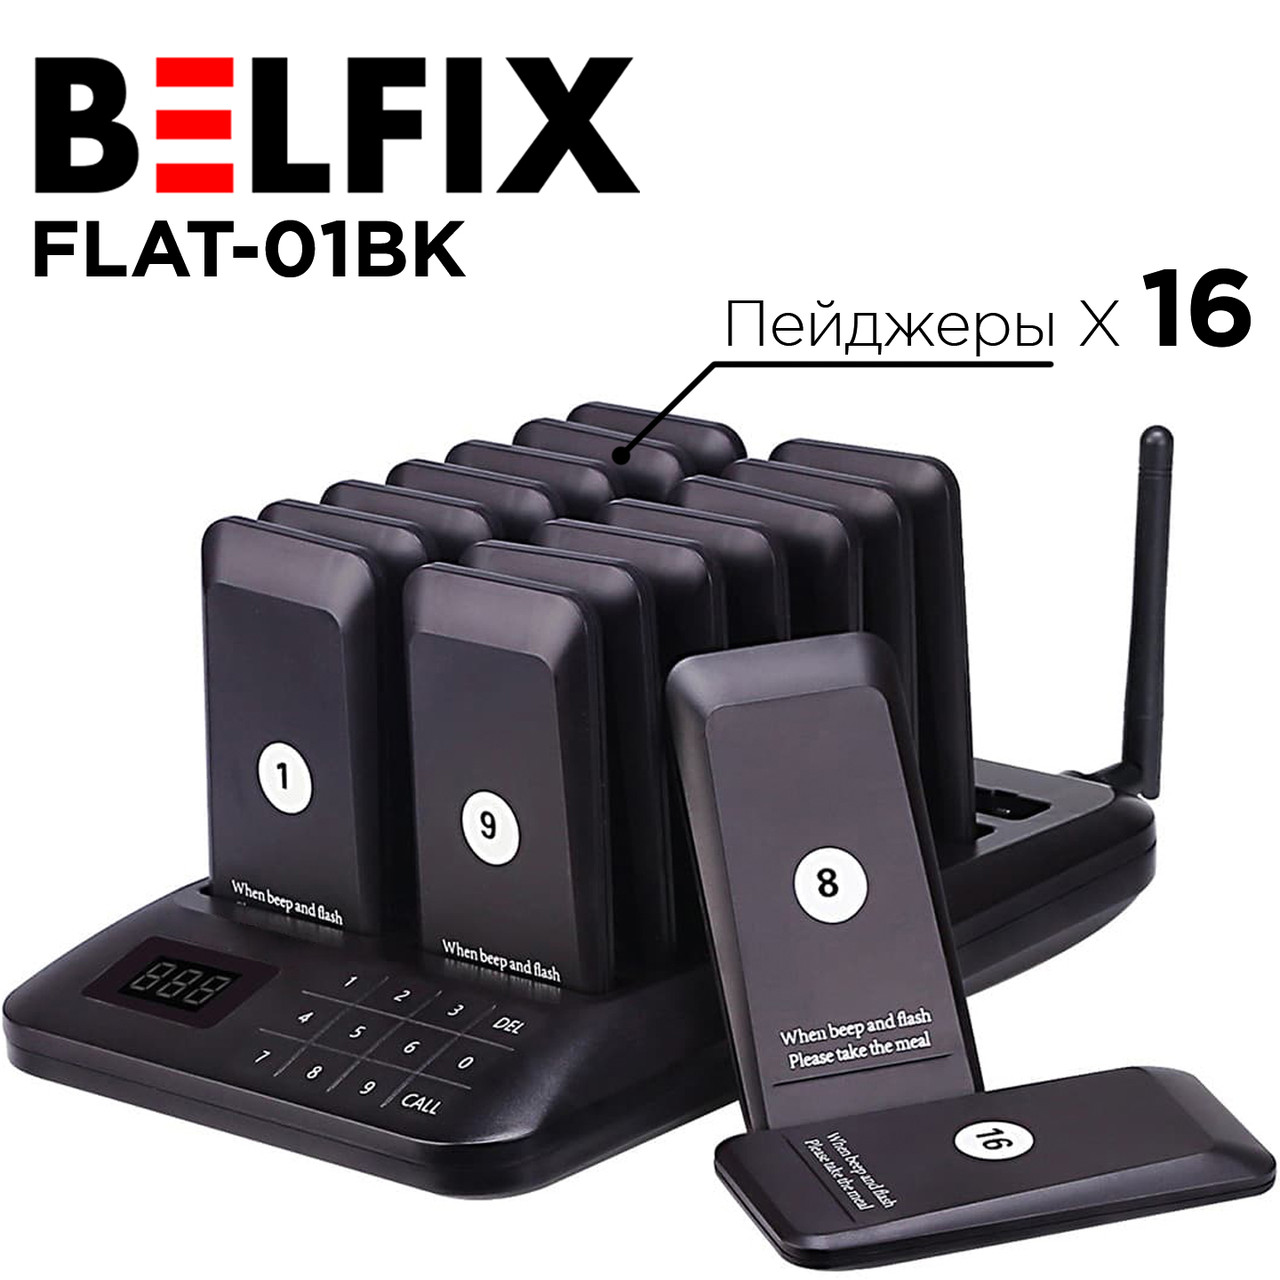 BELFIX FLAT-01BK-Бездротова система оповіщення та виклику клієнтів-База + 16 гостьові Пейджери